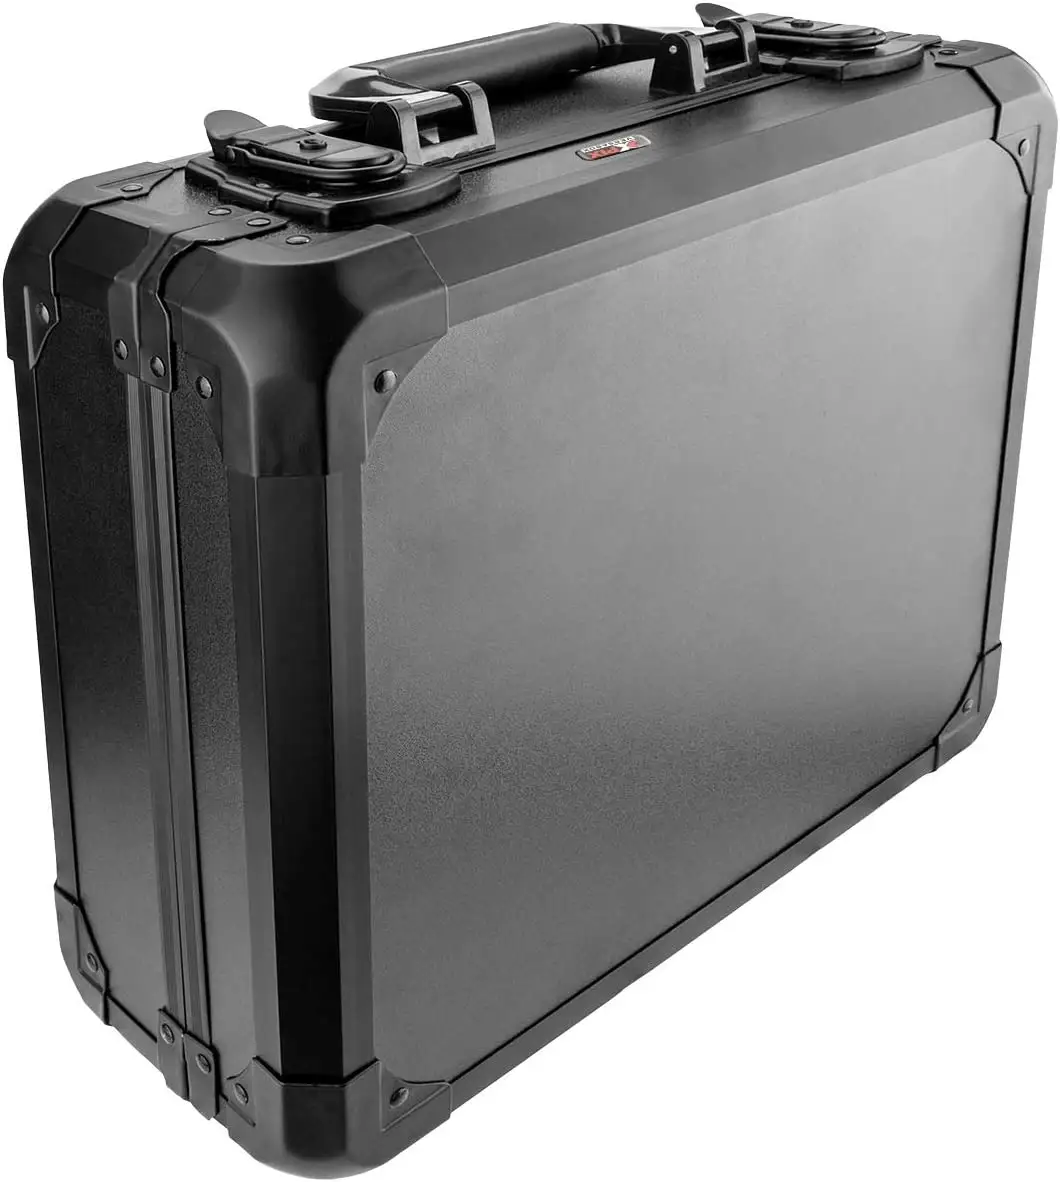 Alüminyum alet taşıma çantası bilgisayar kamera ekipmanları saklama kutusu